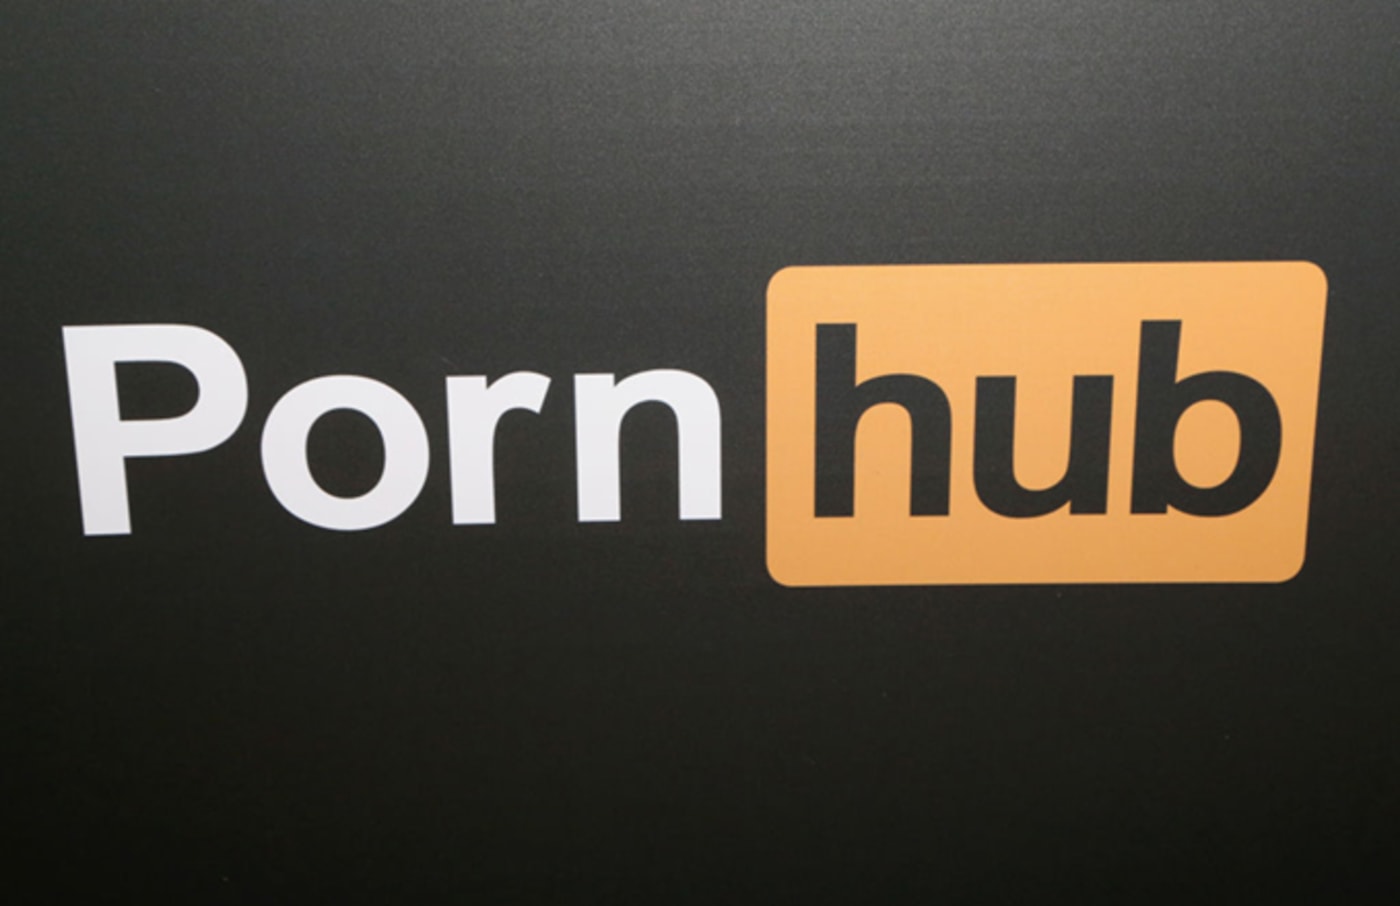 pornhub logo getty 2018